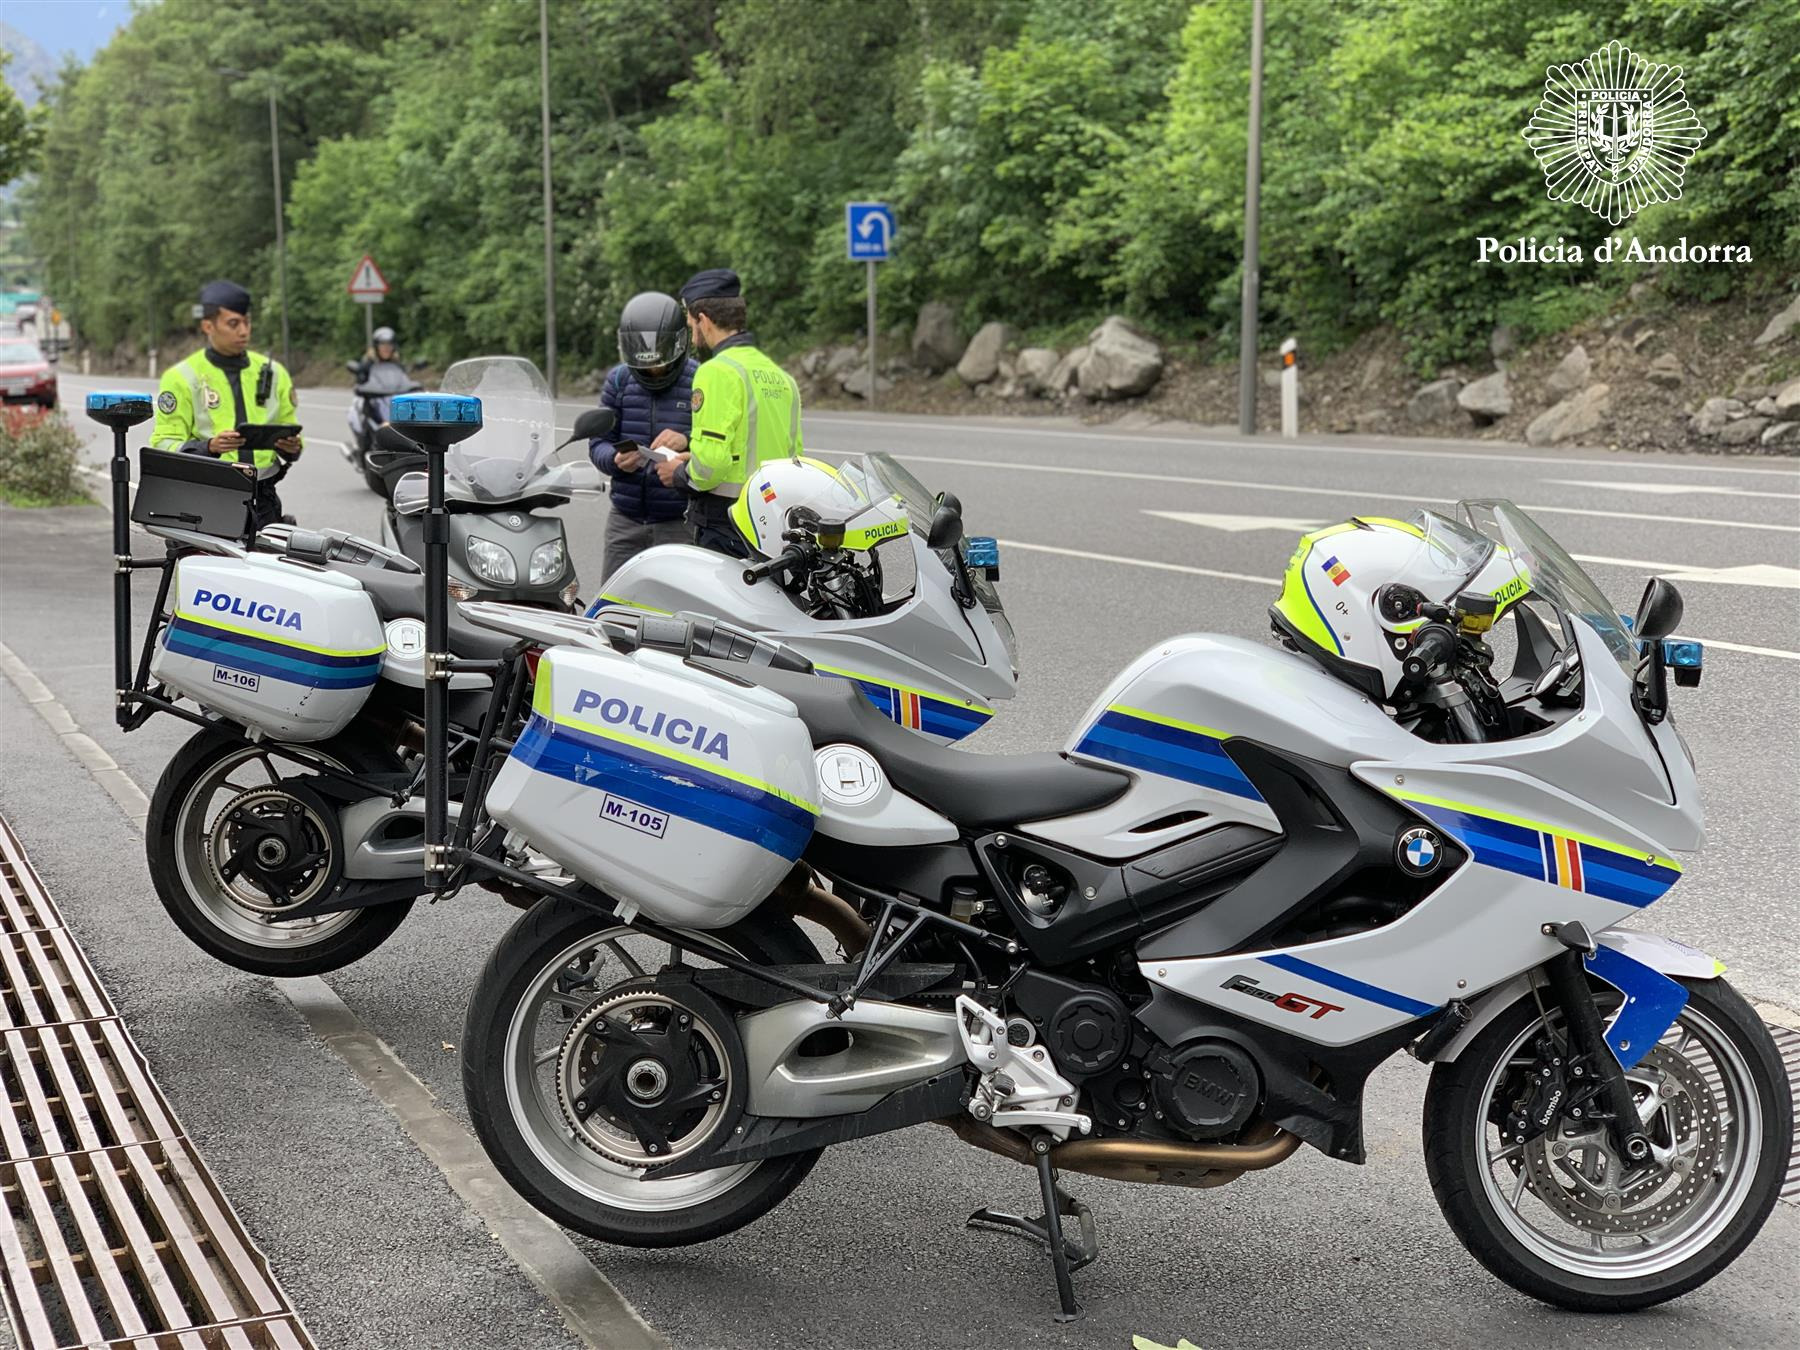 La Policia engega una nova campanya de seguretat en el trànsit dirigida a motos, bicicletes i vehicles de mobilitat personal